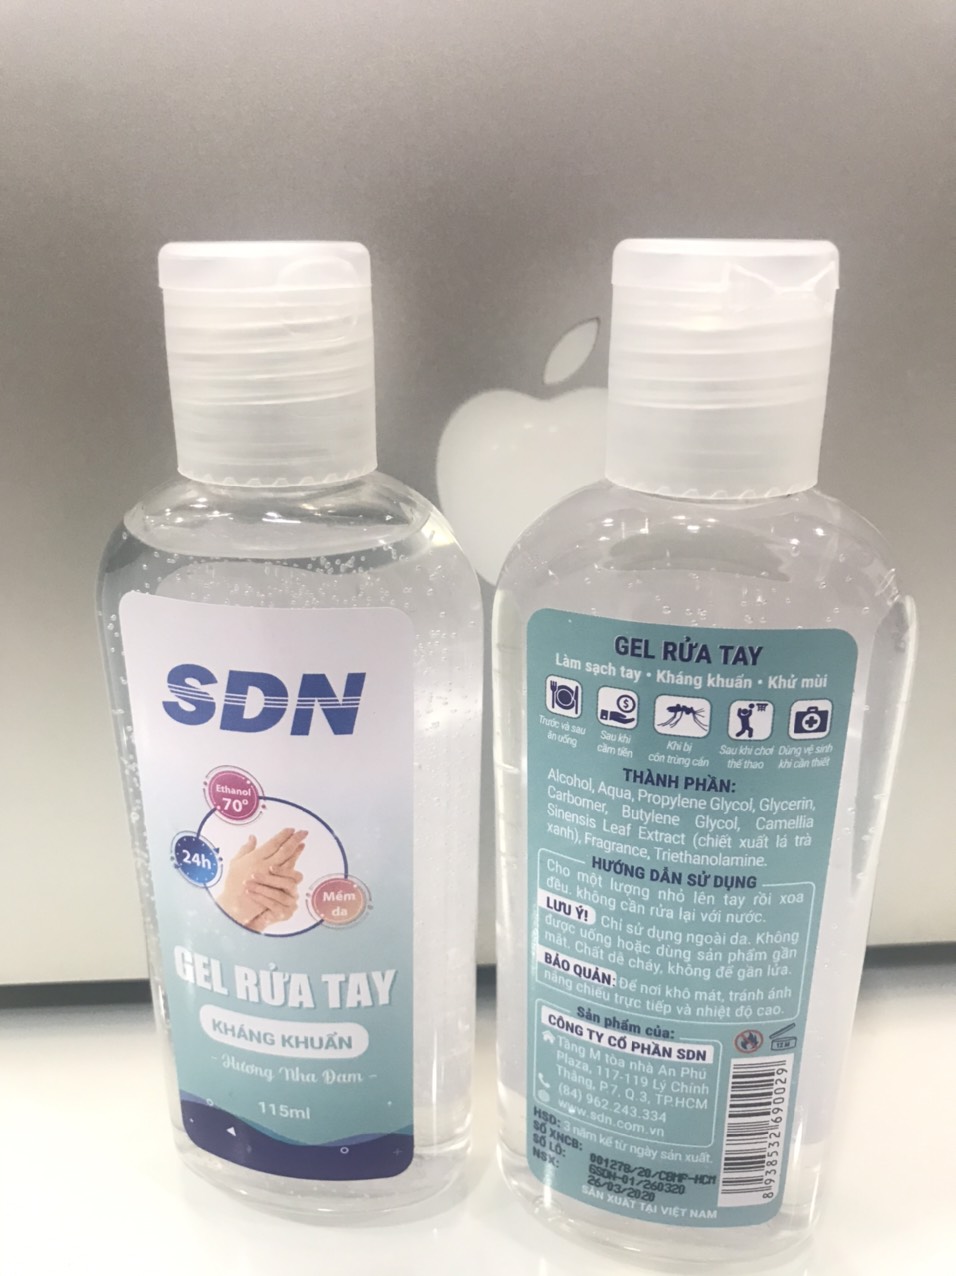 Gel rửa tay SDN